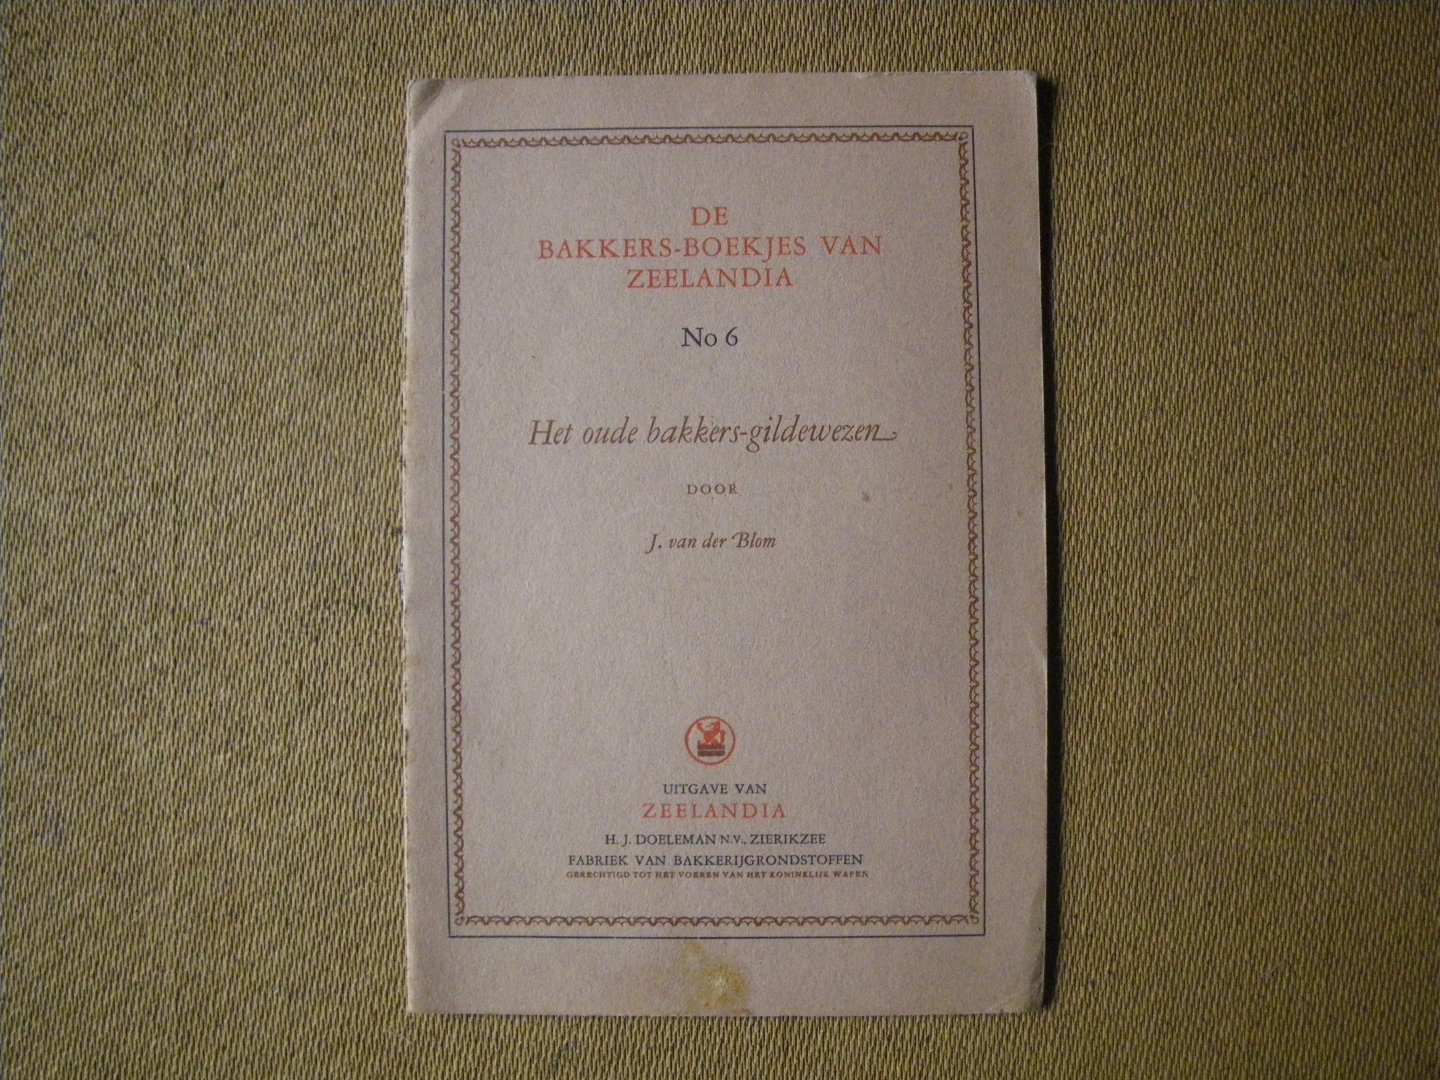 Blom J. van der - Het oude bakkers-gildewezen - de bakkersboekjes van Zeelandia no.6-